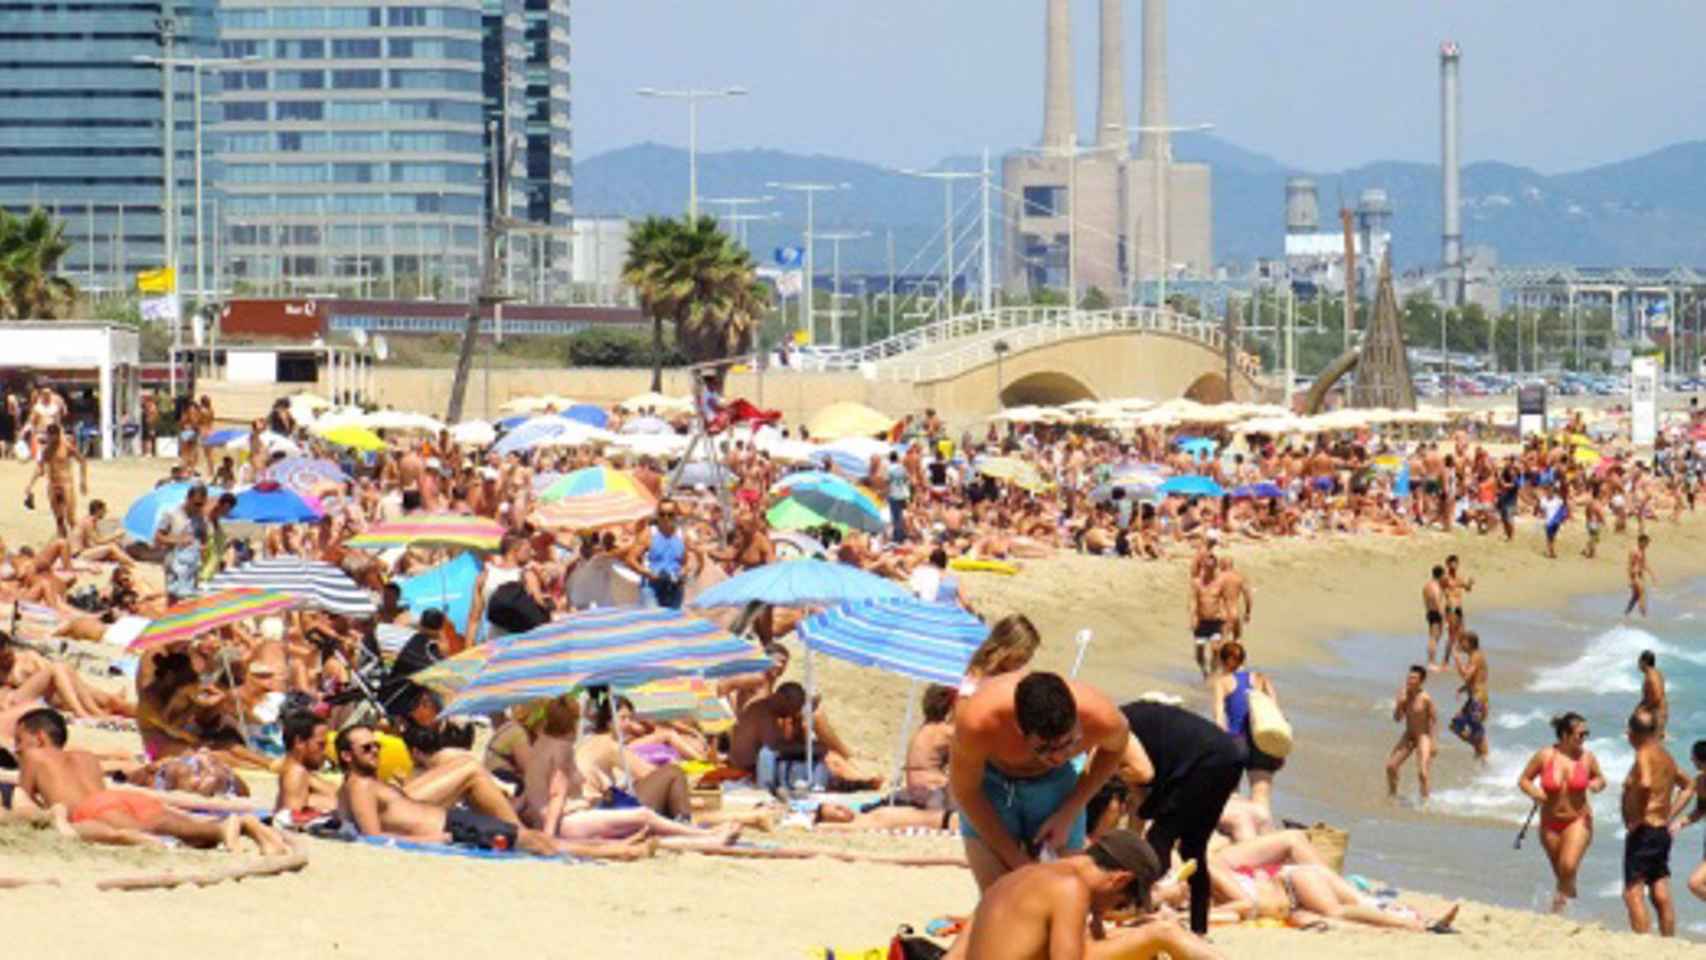 Una playa de Barcelona, sometida a grandes presiones ambientales, según un informe